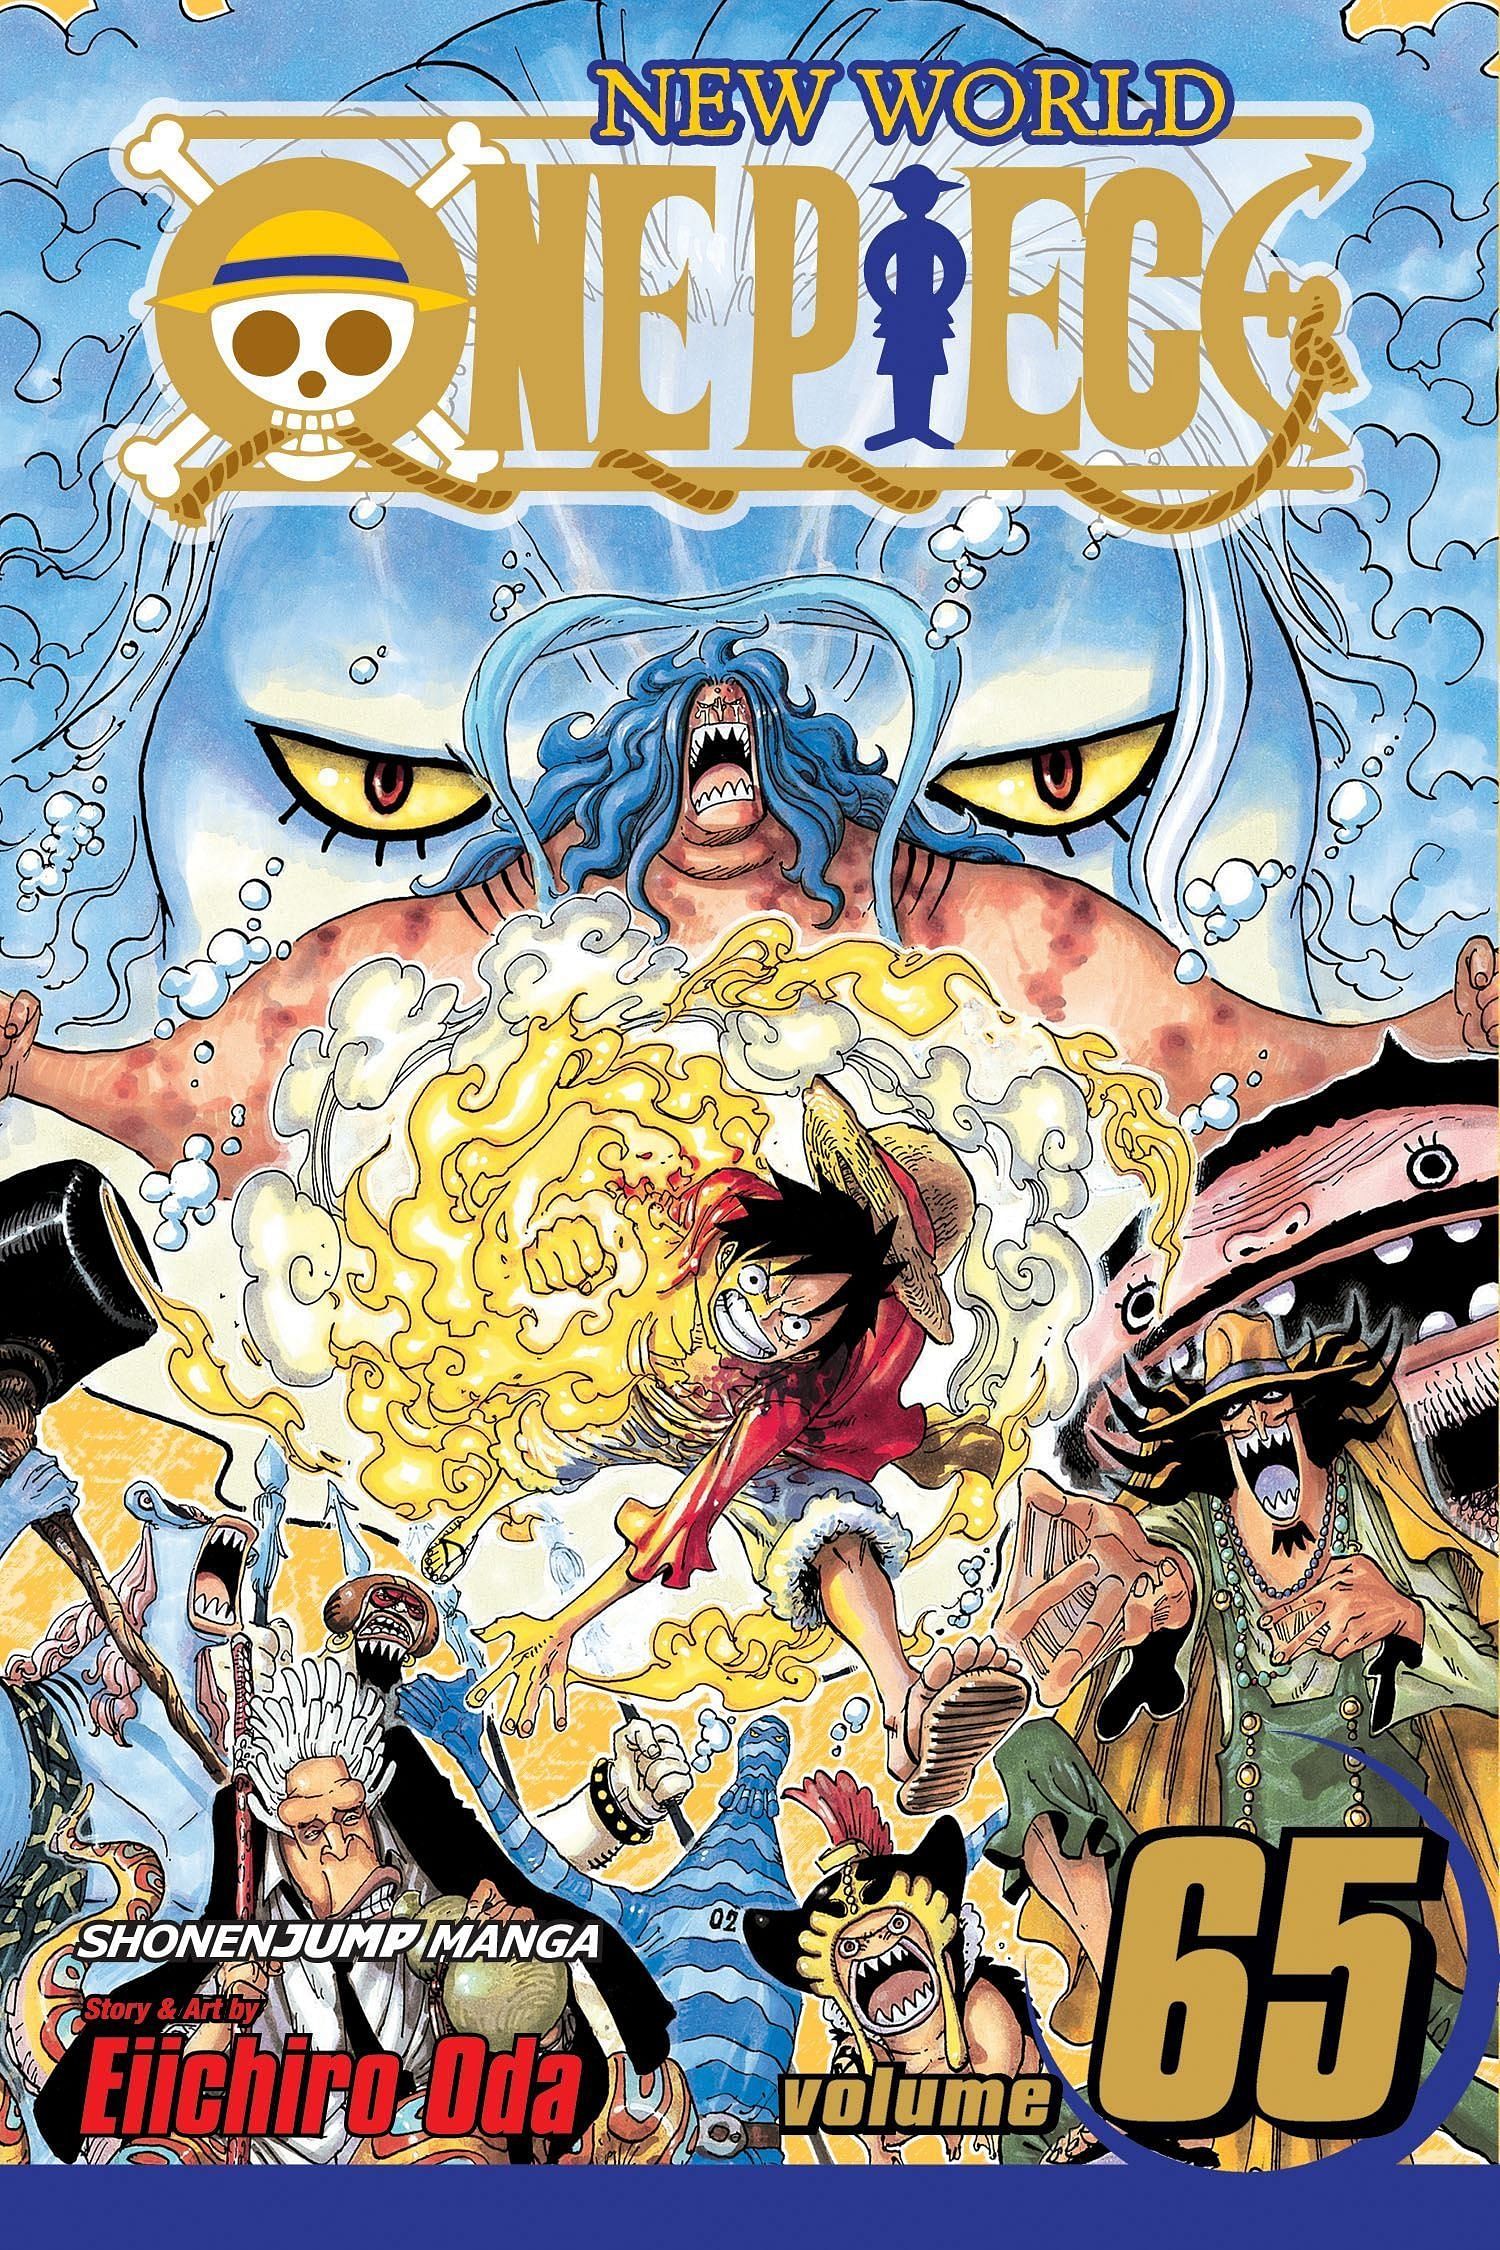 The cover art for One Piece Volume 65 (Image via Shueisha)